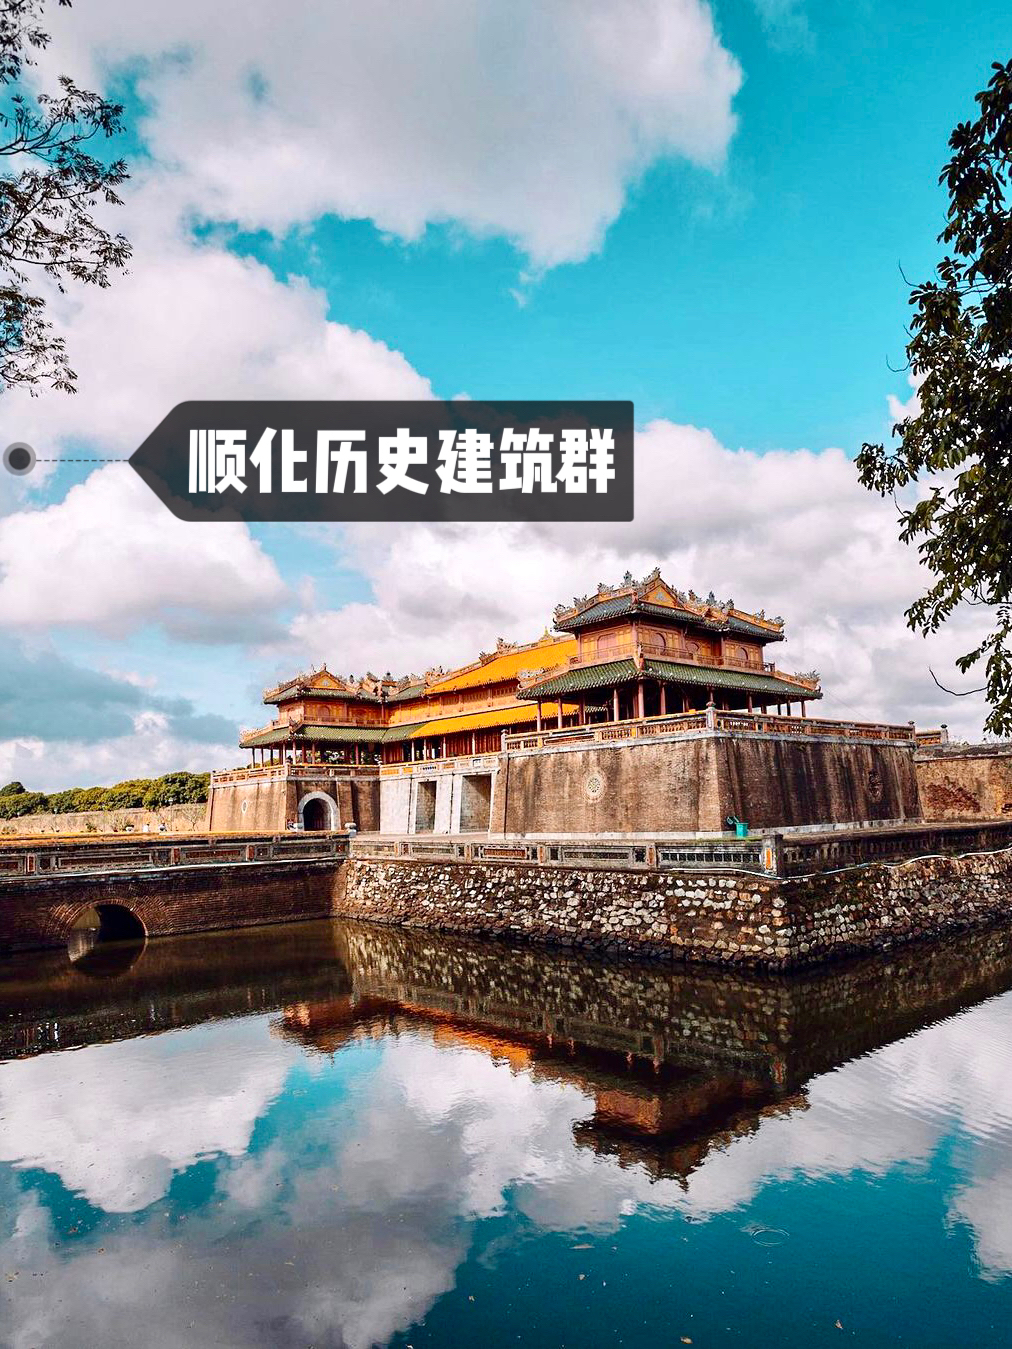 “宏伟的越南‘紫禁城’”---越南顺化历史建筑群